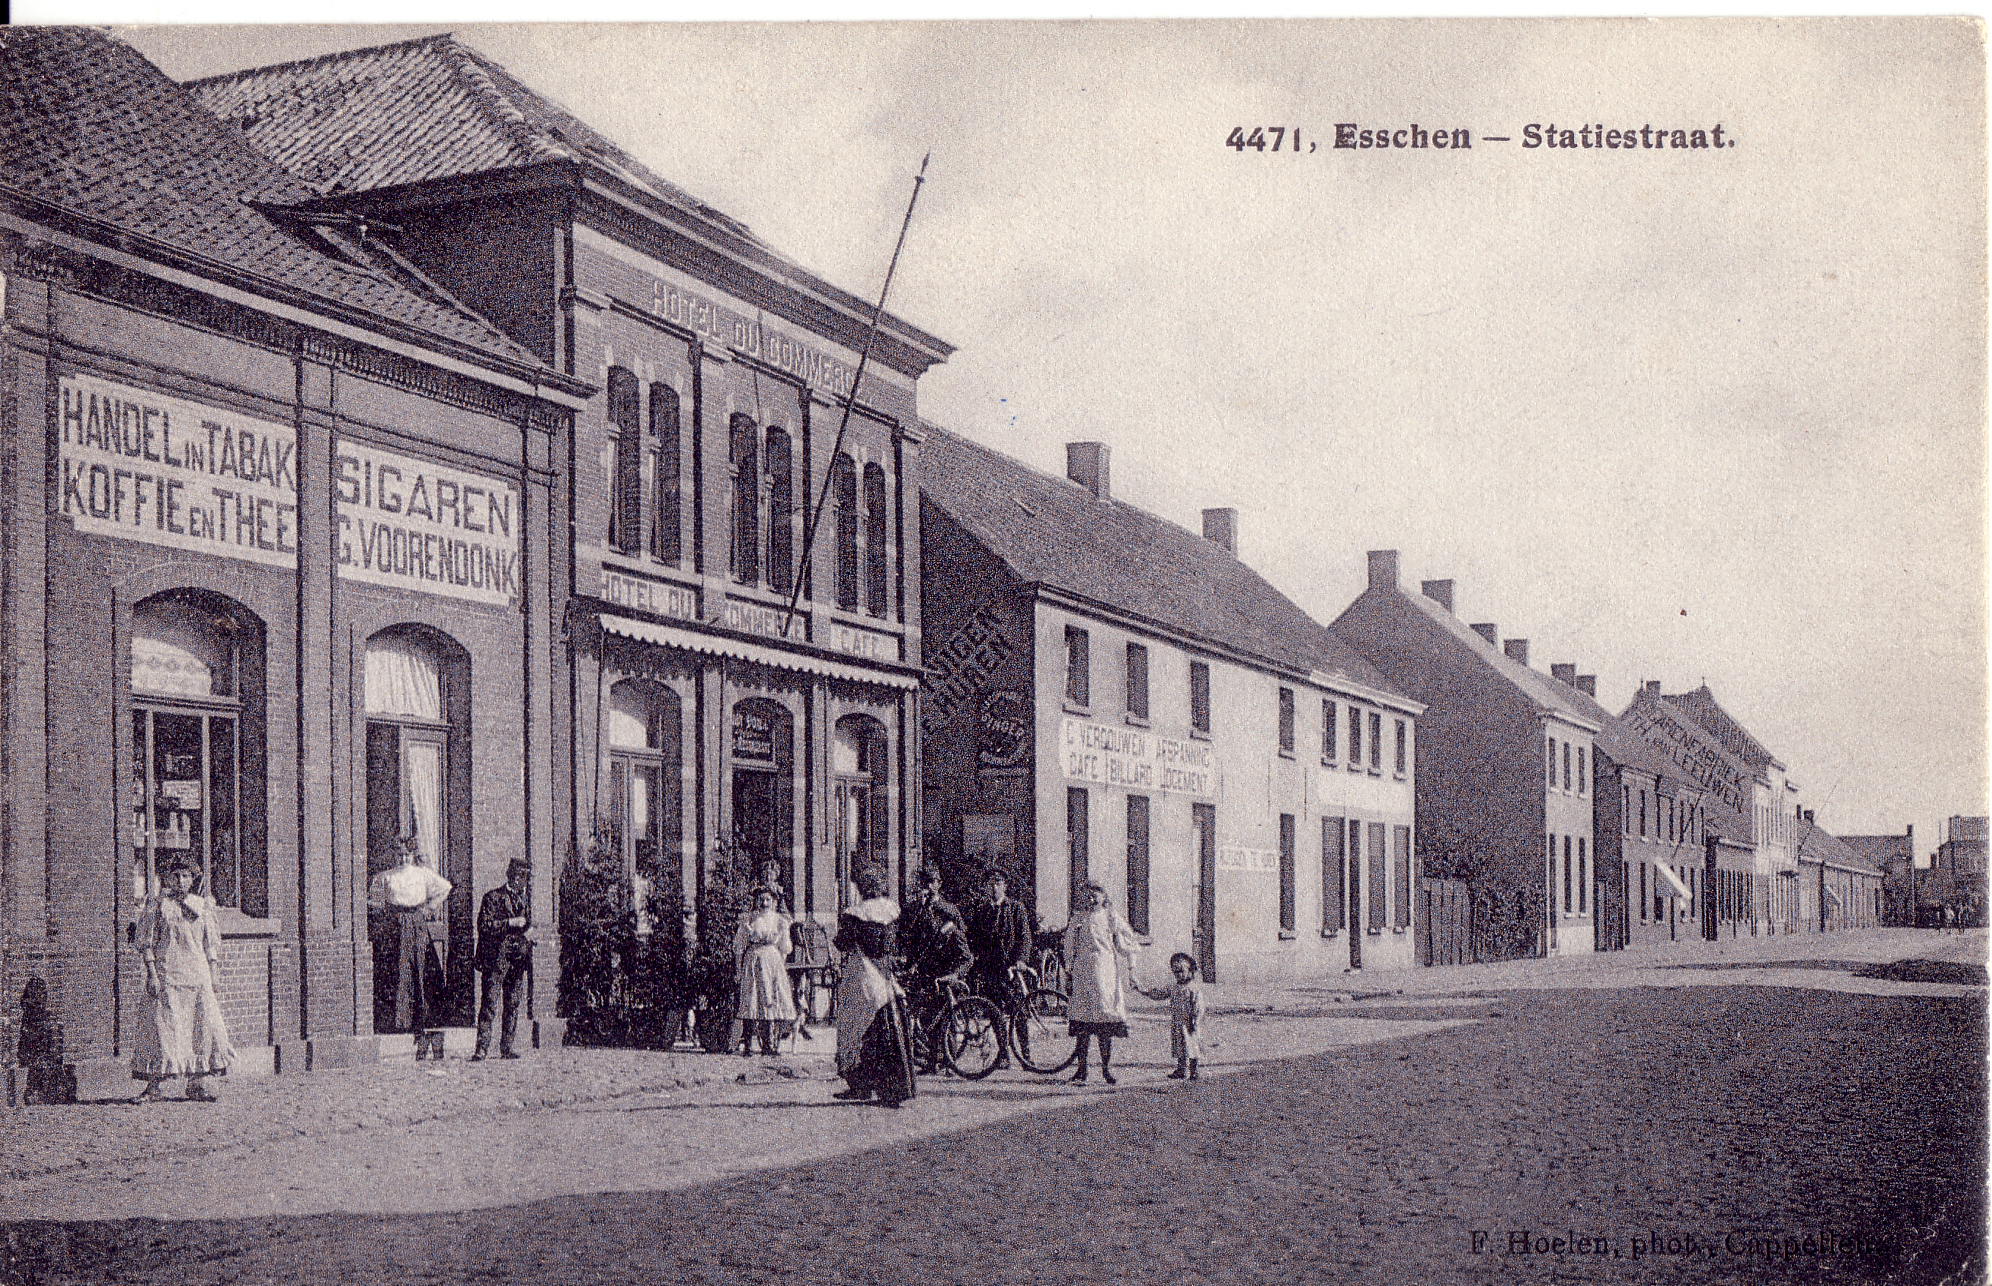 Statiestraat, Essen, 1908. Collectie Académie Royale de Belgique, Prentkaartenverzameling Belfius Bank.